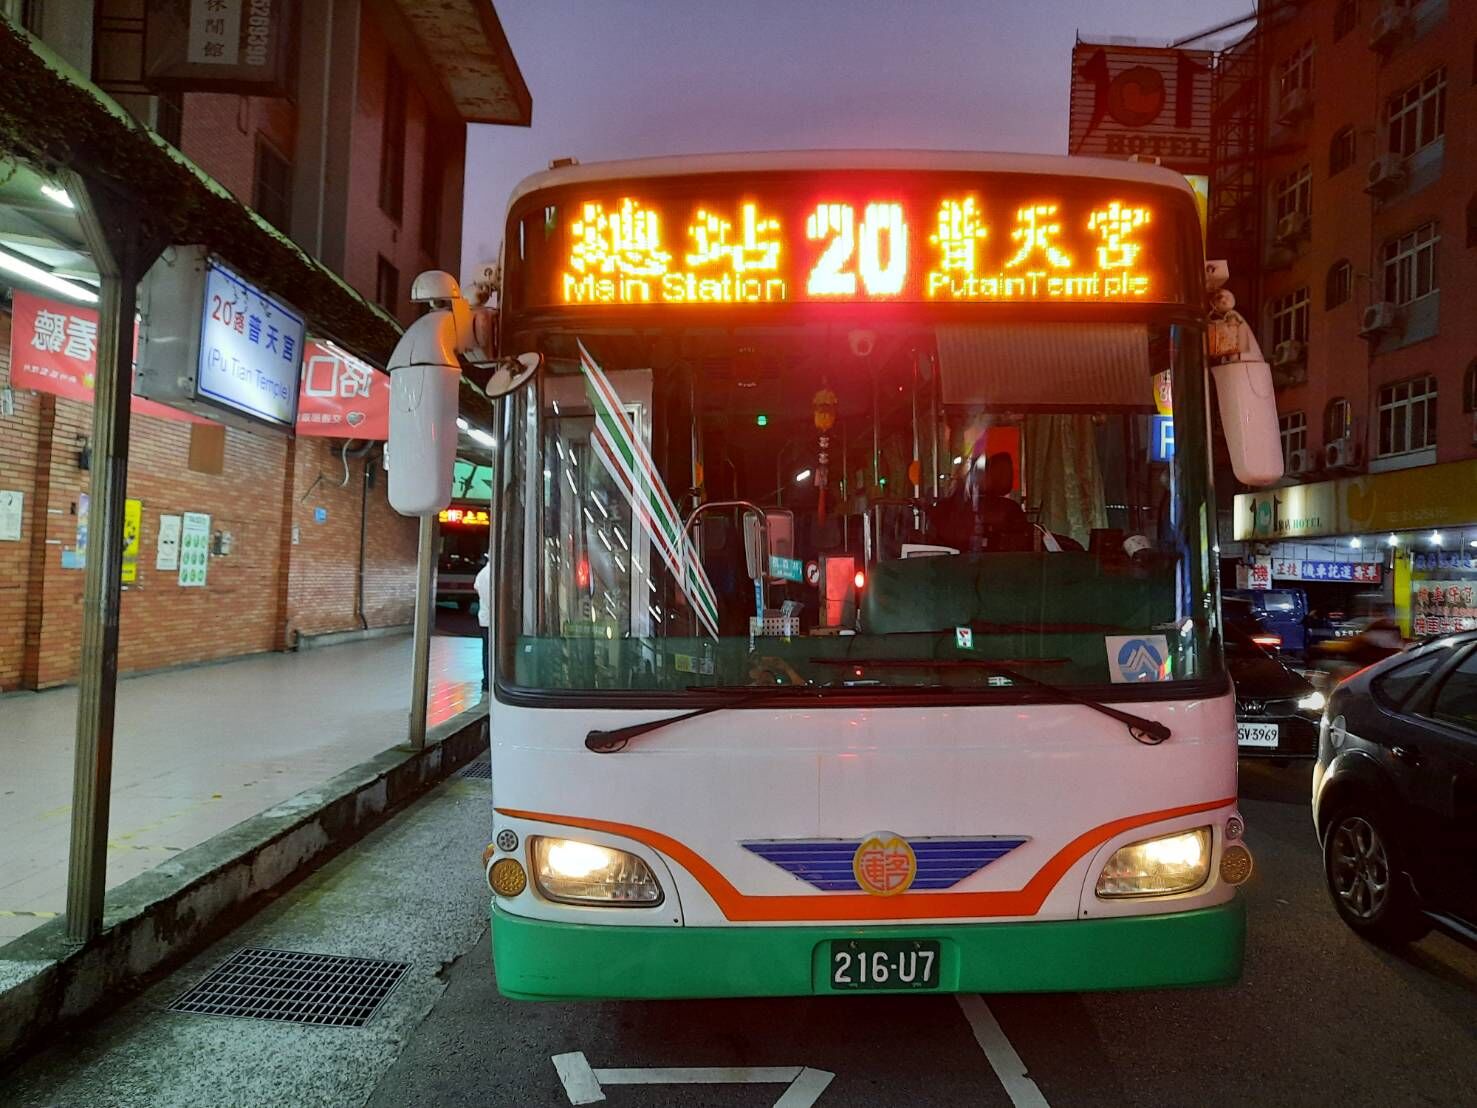 客運人力吃緊影響公車班次  竹市府主動介入協調  20路公車11/6起尖峰時間再增2班